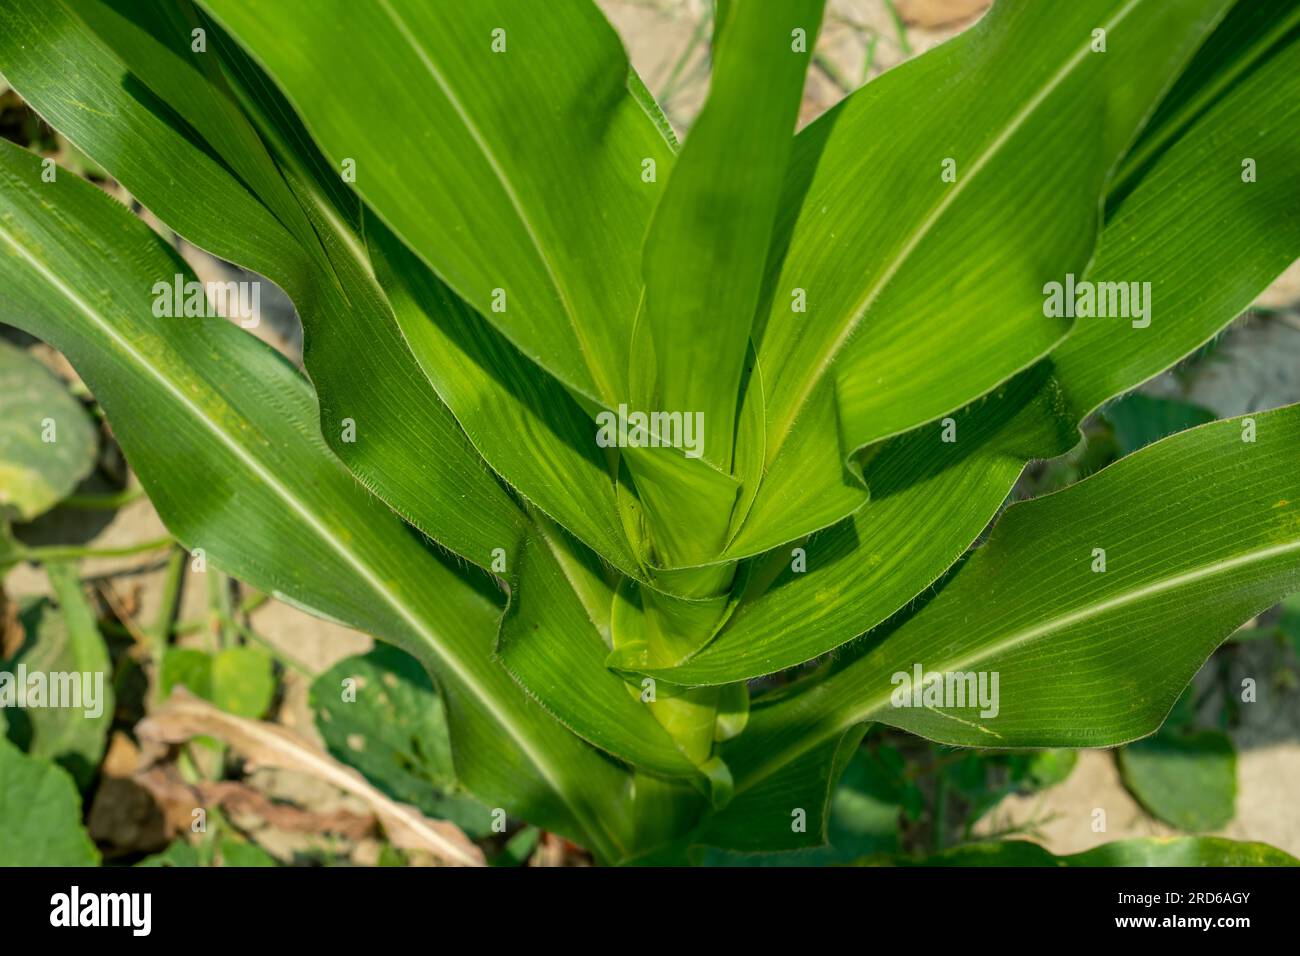 Die Maispflanze oder Dracaena Duftstoffe, die Maispflanze, die Maispflanze. Es hat große, längliche, schmale Blätter, die an gegenüberliegenden Stellen abwechselnd wachsen Stockfoto